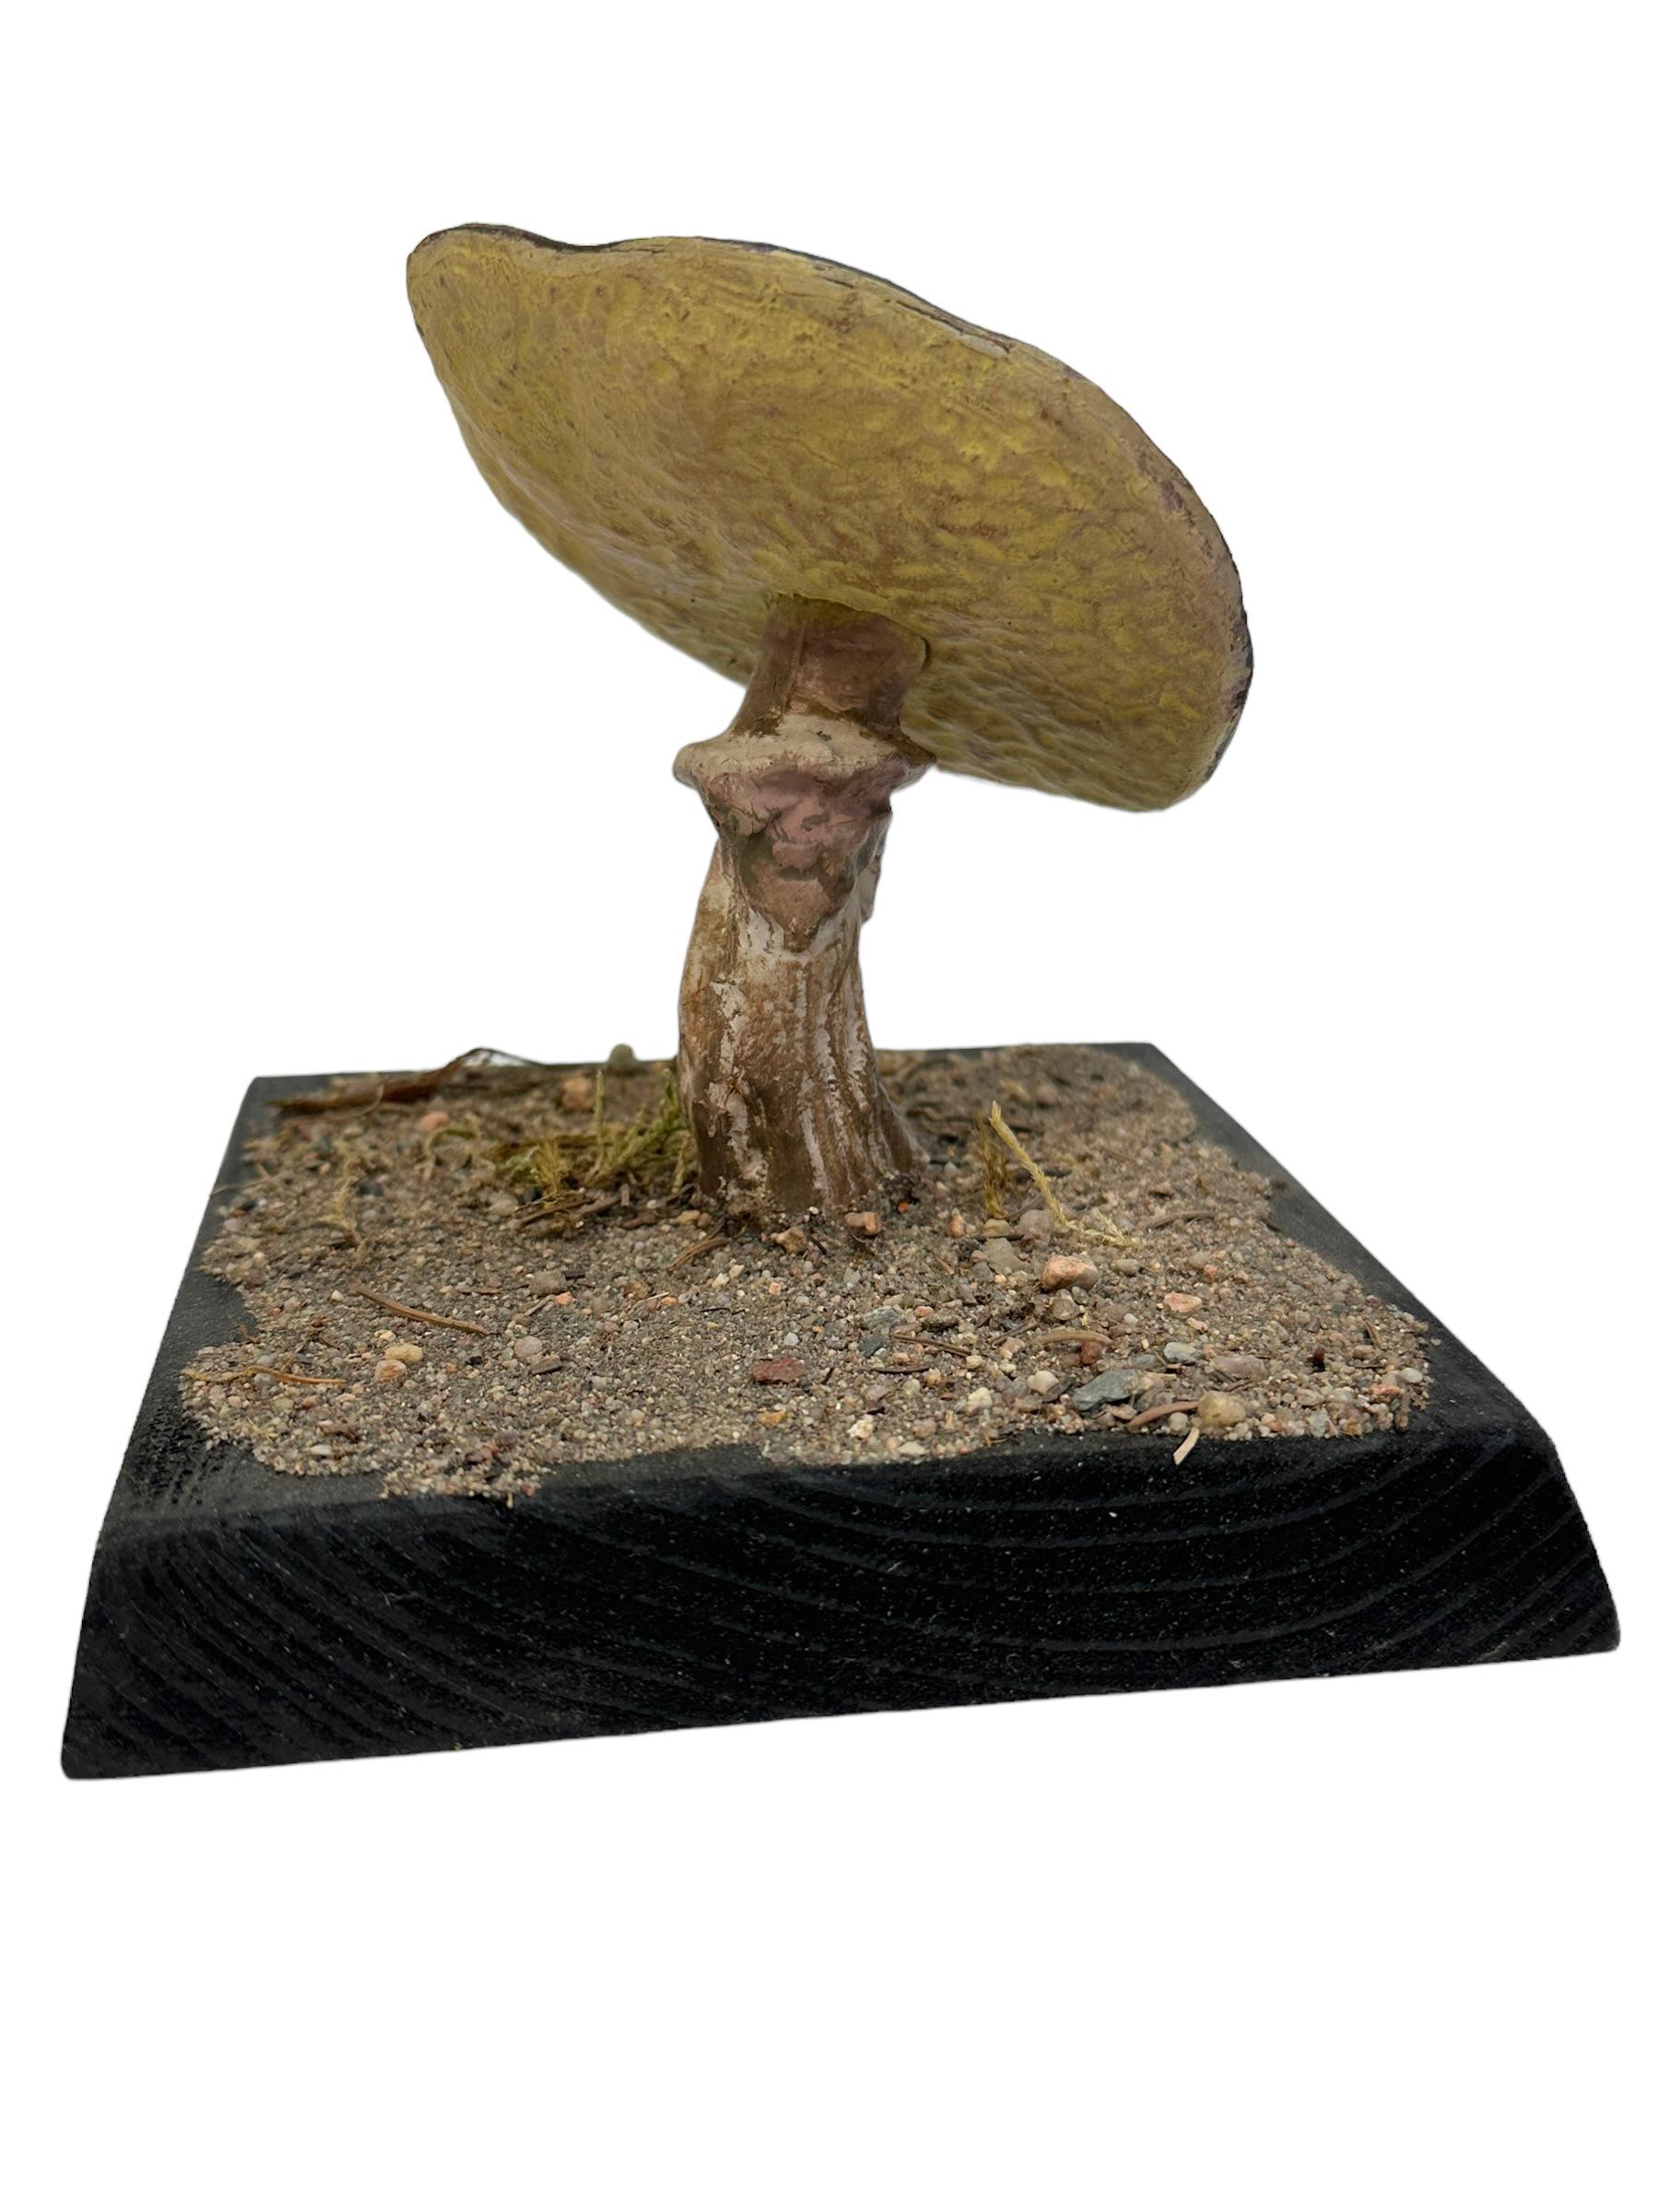 Dieses seltene Vintage-Modell eines botanischen wissenschaftlichen Exemplars stellt einen in Mitteleuropa heimischen Pilz dar. Diese Art von Artikeln wird als Unterrichtsmaterial in deutschen Schulen oder als Ausstellungsstücke in Apotheken